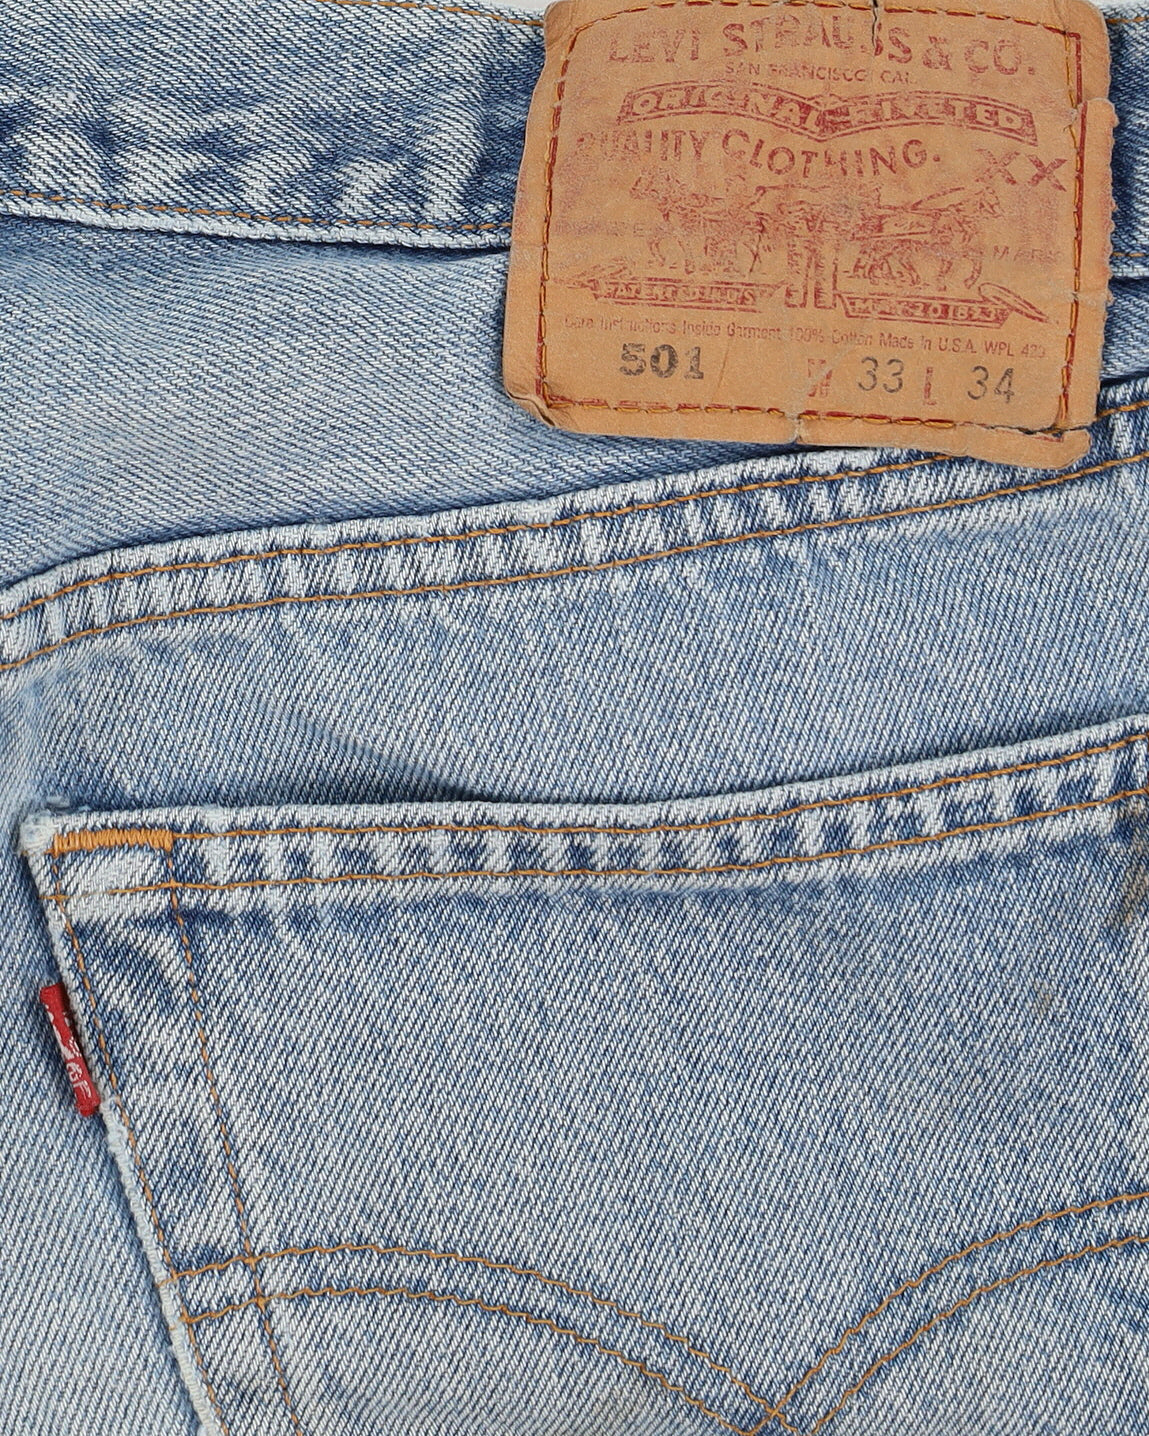 Vintage 90s Levi's 501 Blue Jeans - W32 L34